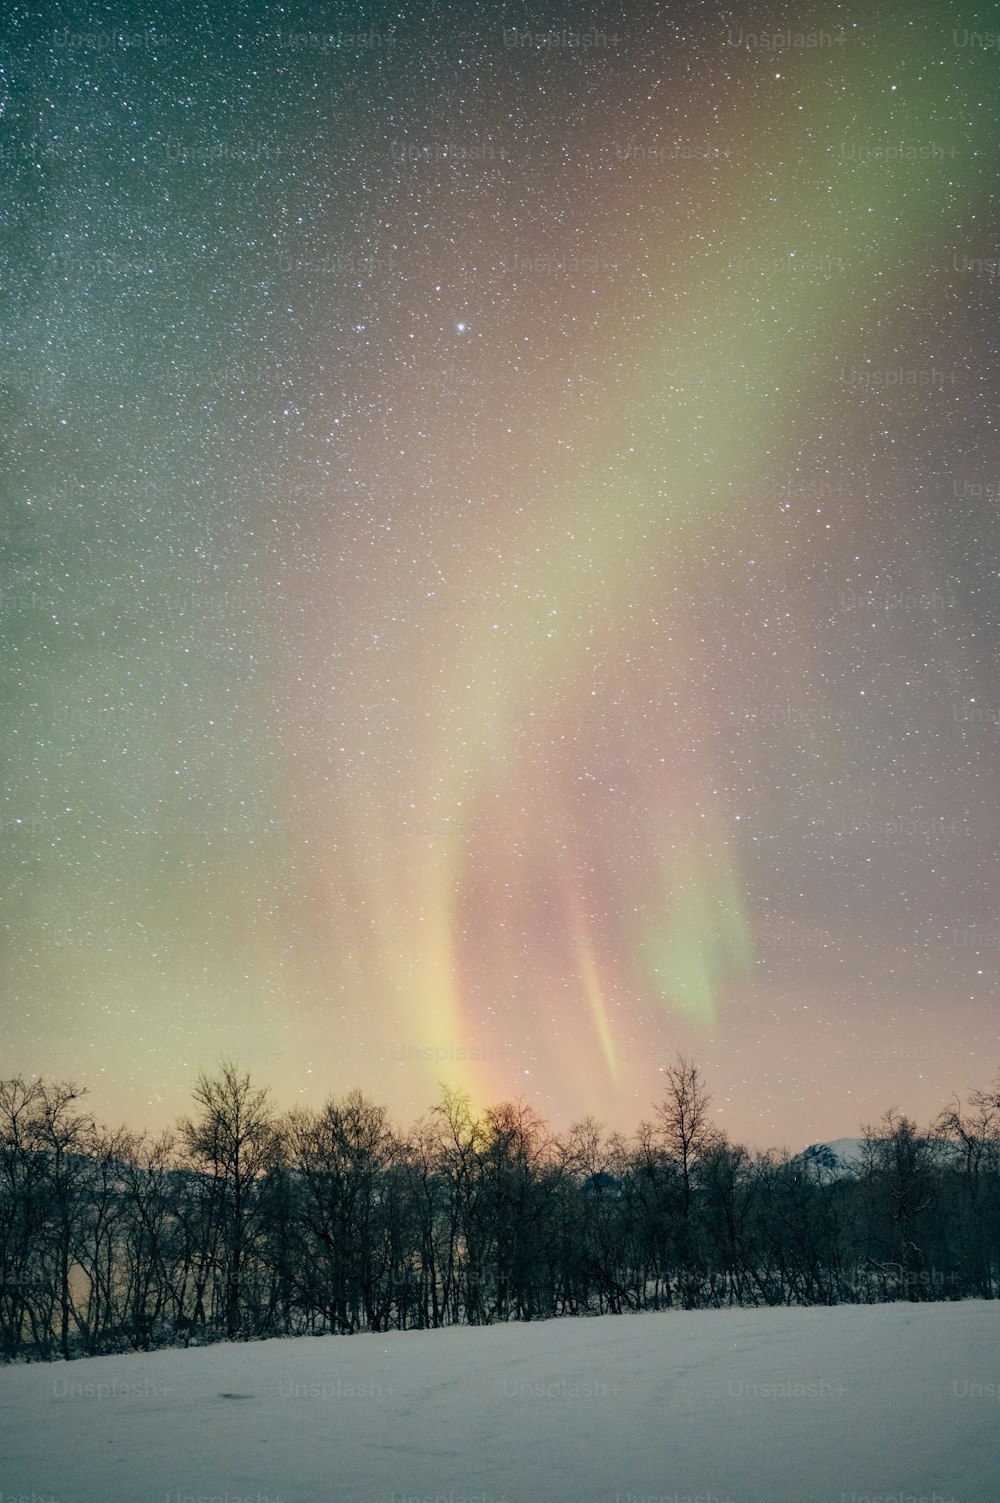 A aurora trazia no céu sobre um campo coberto de neve